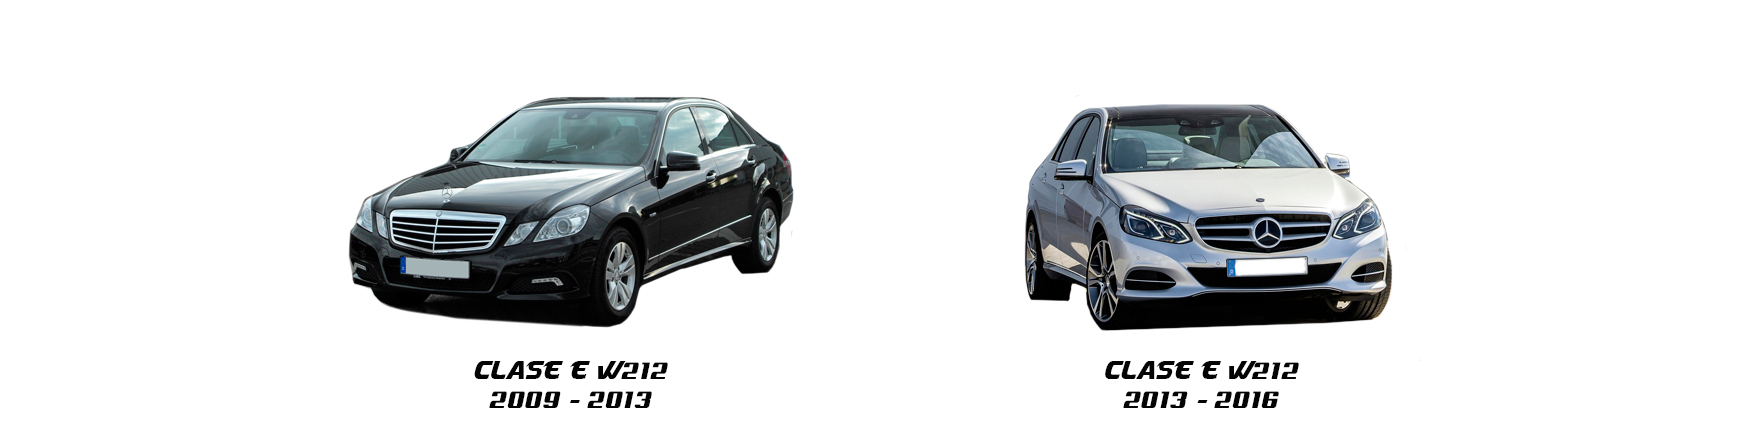 Piezas de Mercedes Clase E W212 de 2009, 2010, 2011, 2012 y 2013